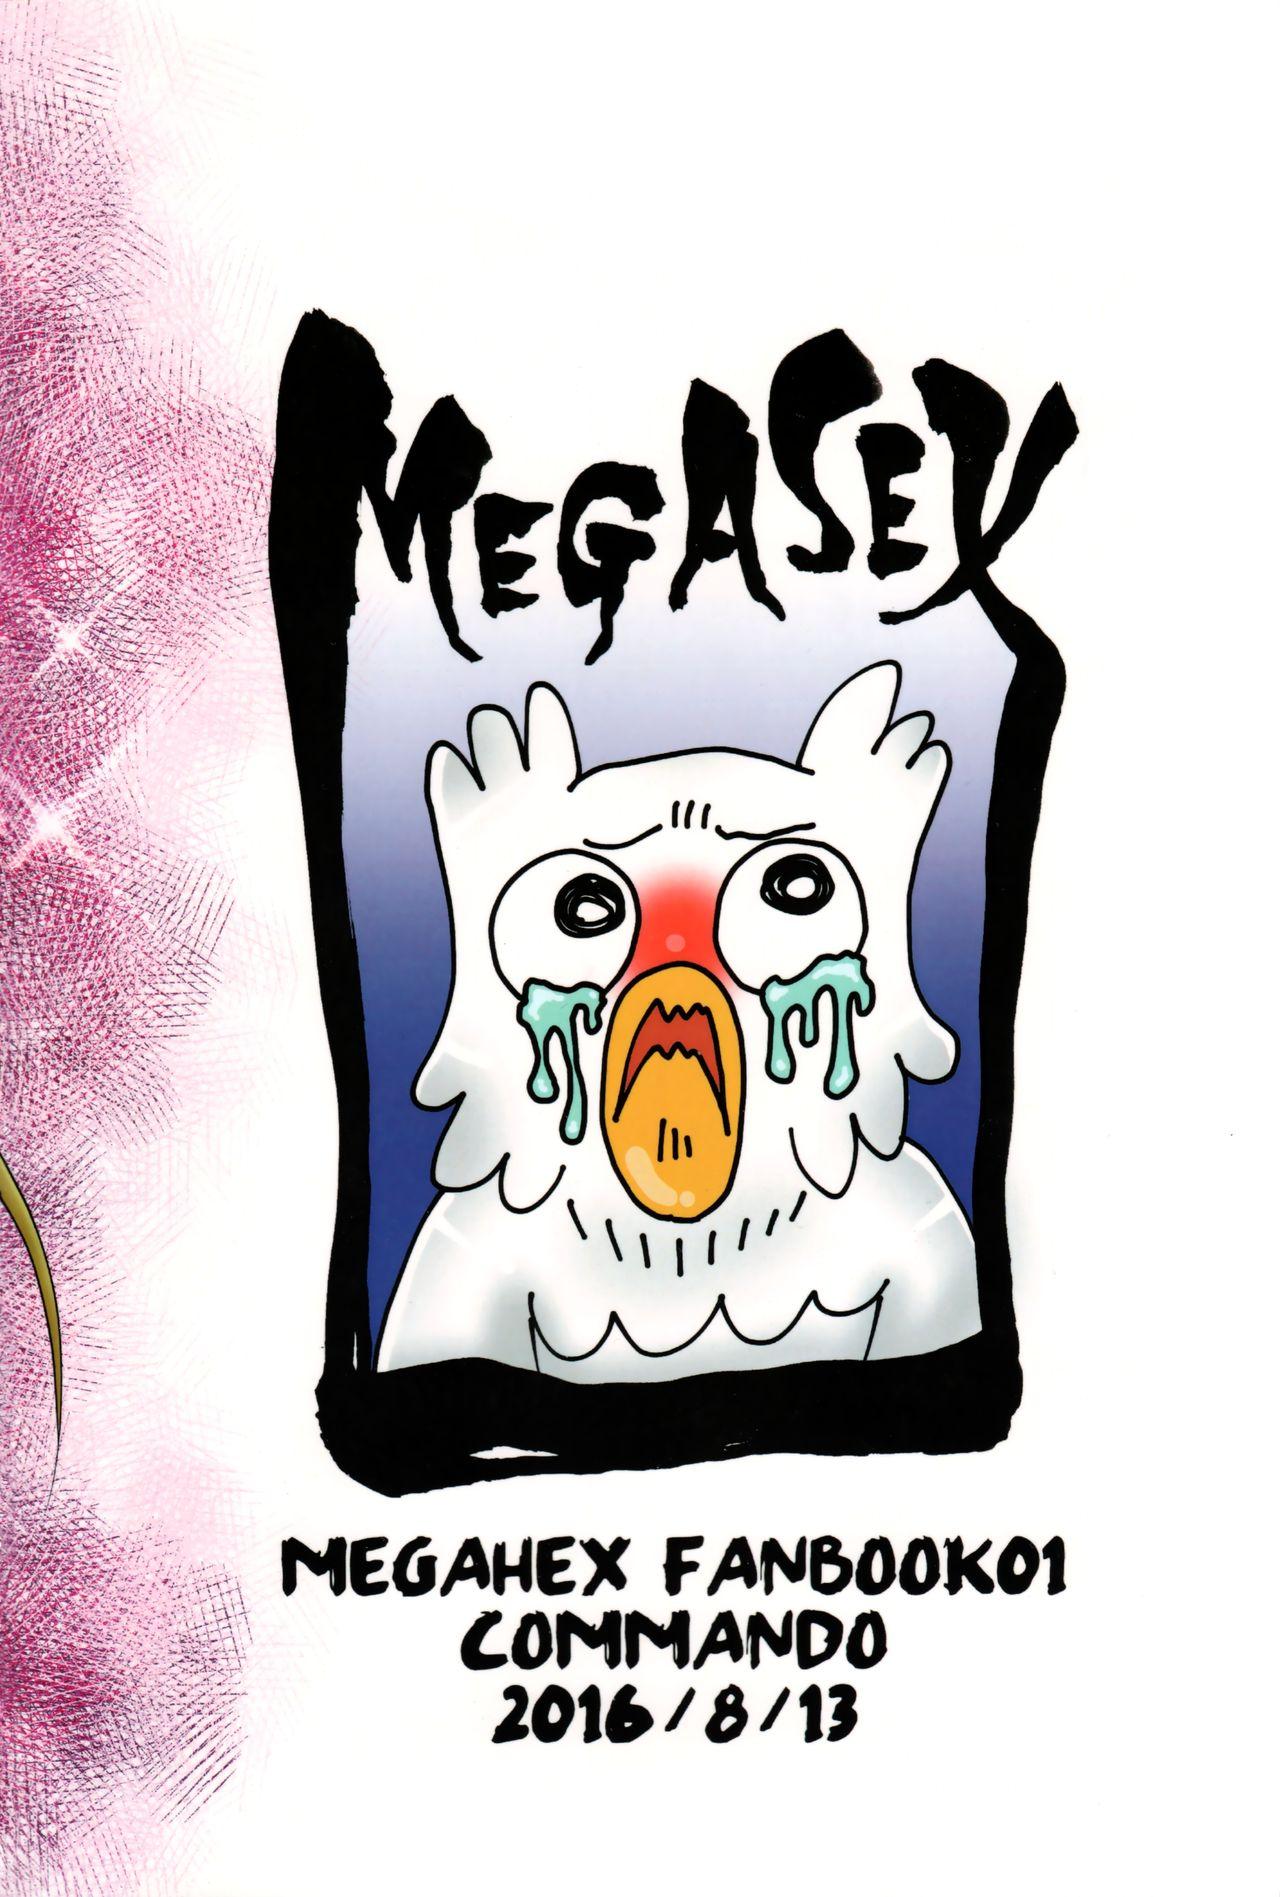 Megasex 27